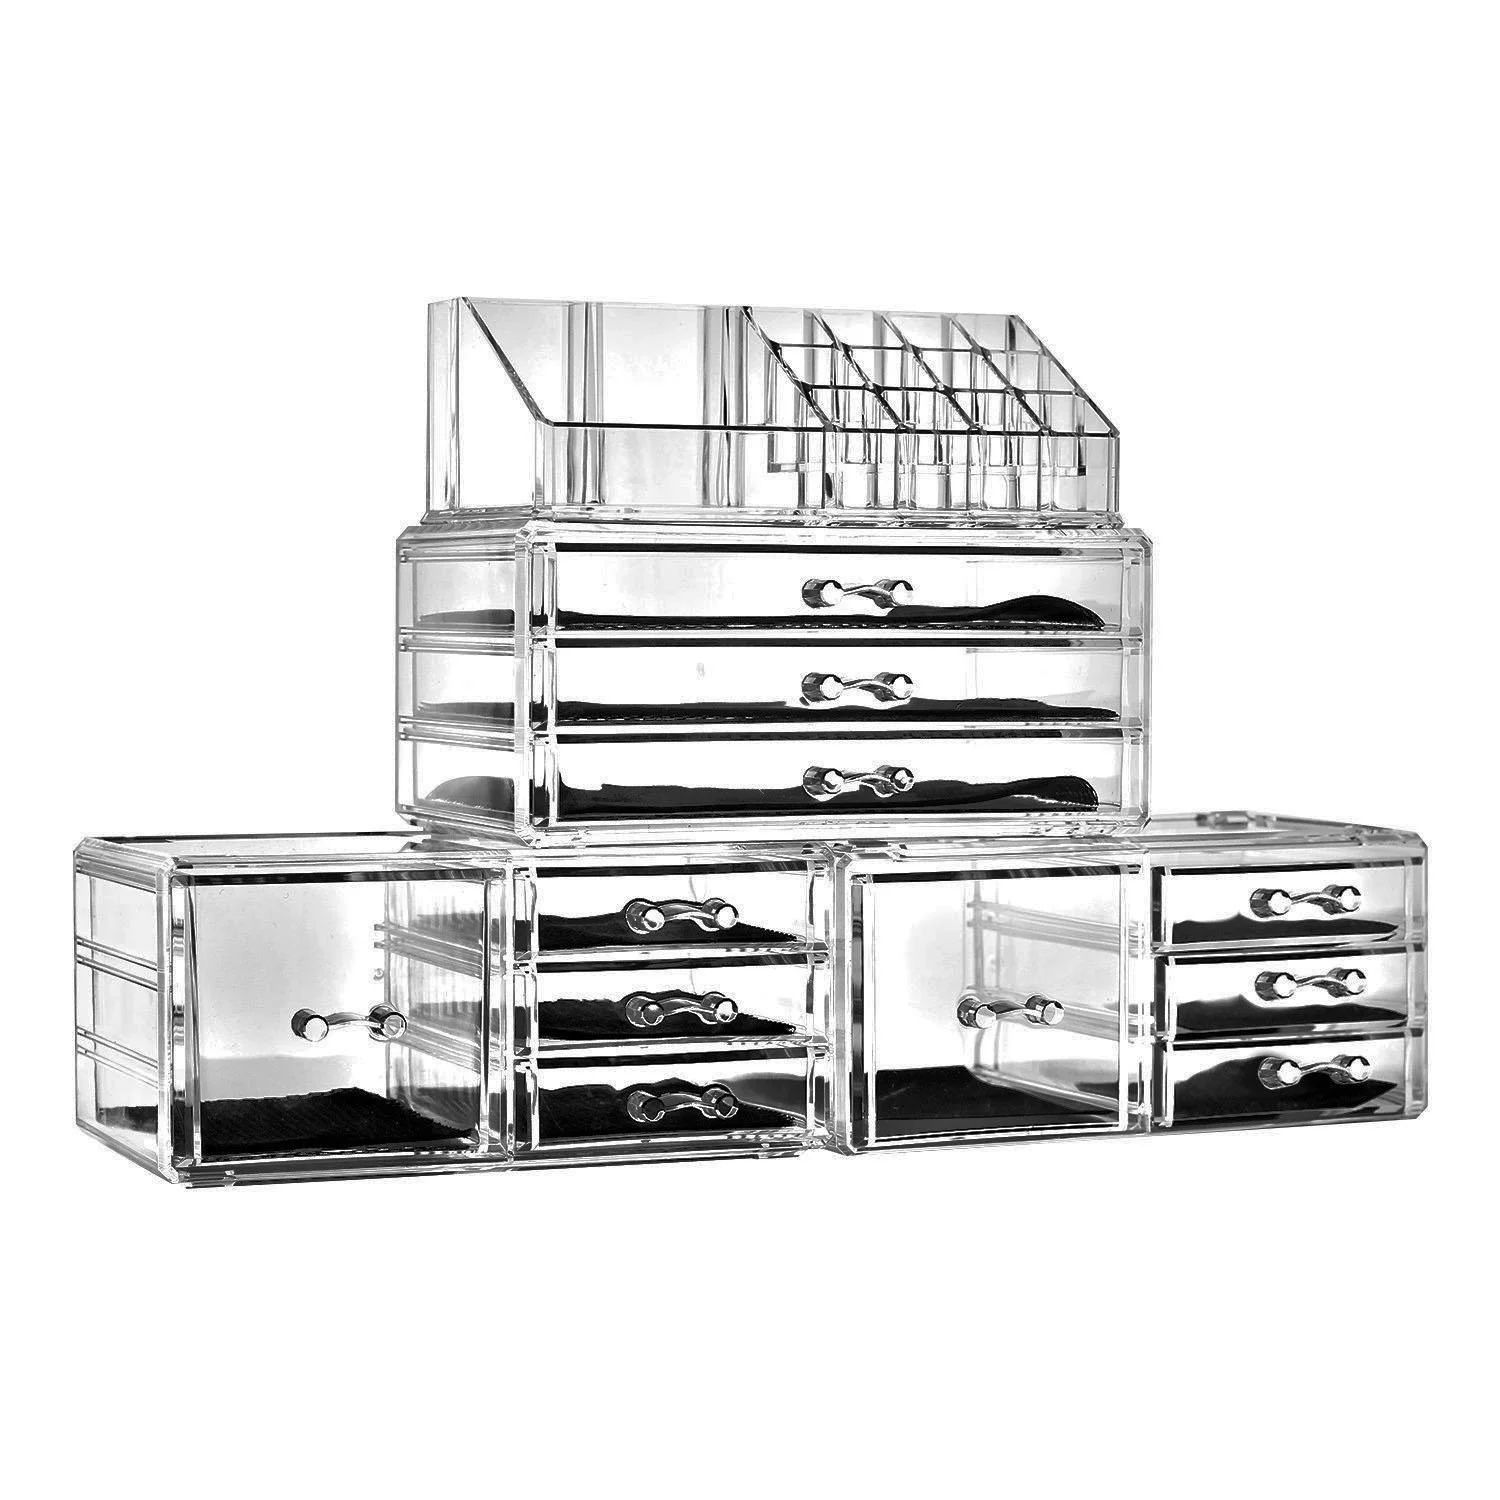 Ktaxon 11 Drawers Clear Acrylic Tower Organizer Cosmetic Jewelry Luxury Storage Cabinet | Walmart (US)